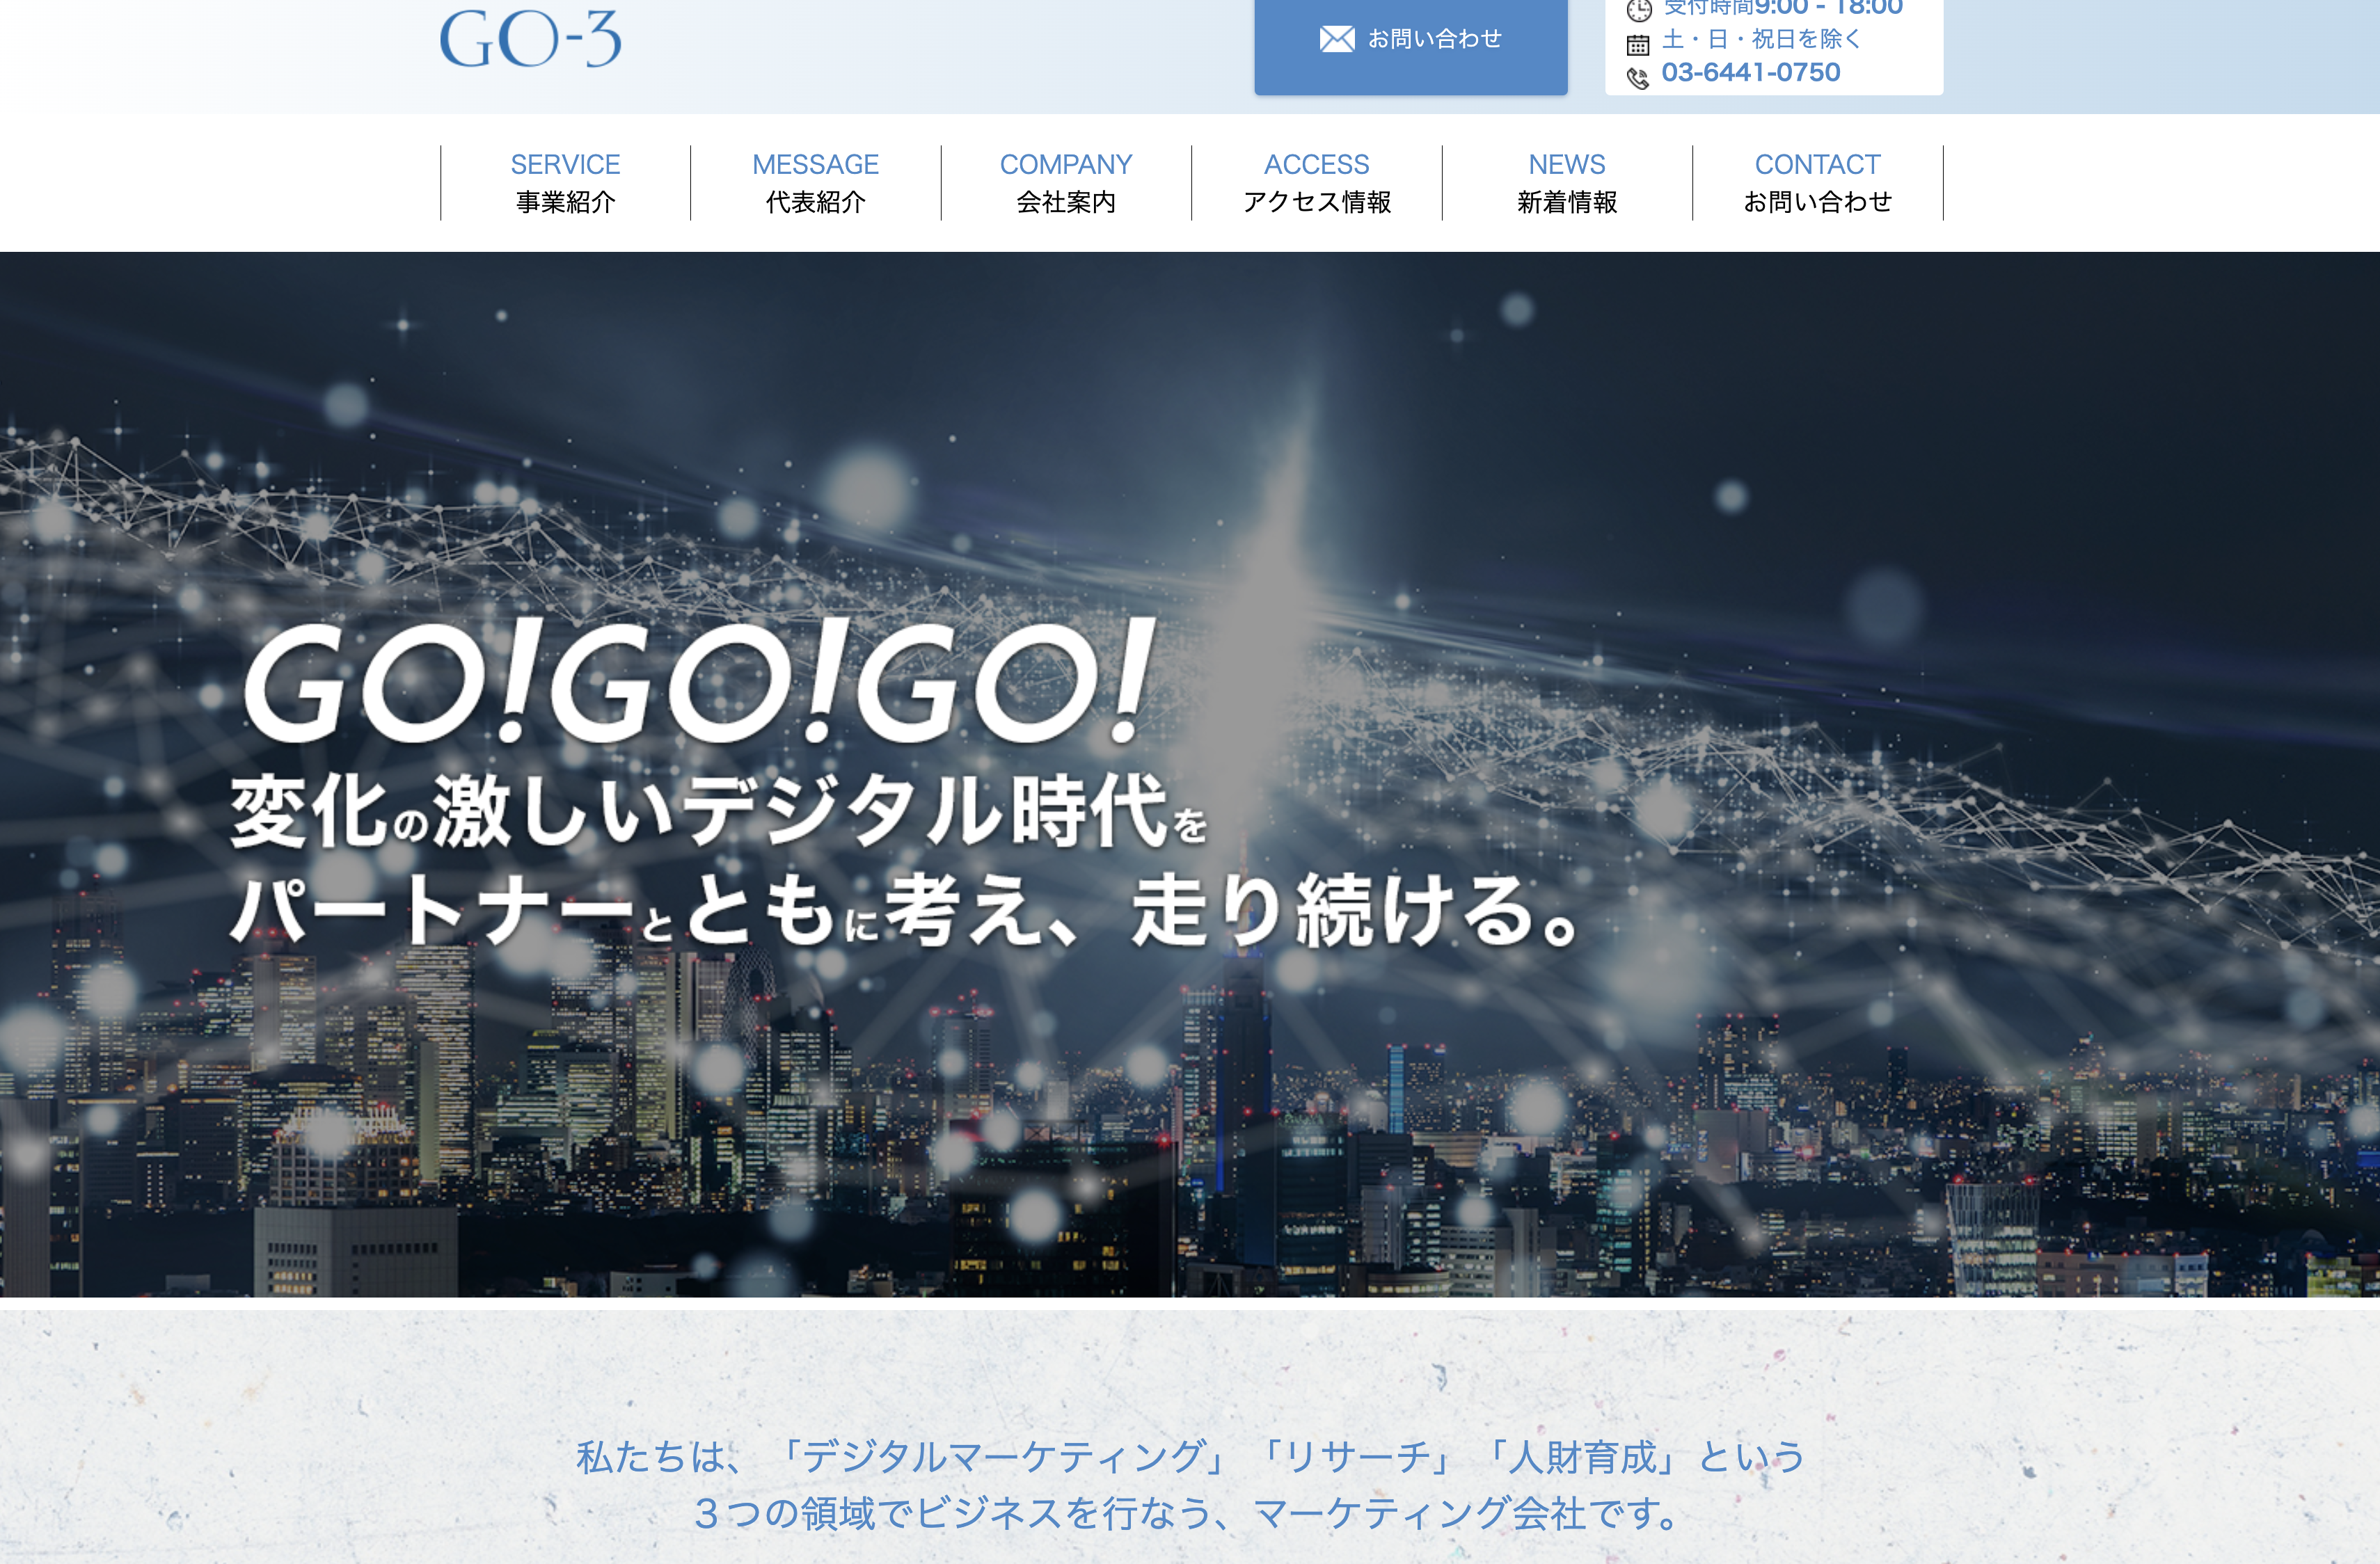 株式会社GO-3の株式会社GO-3:SFA・CRMサービス